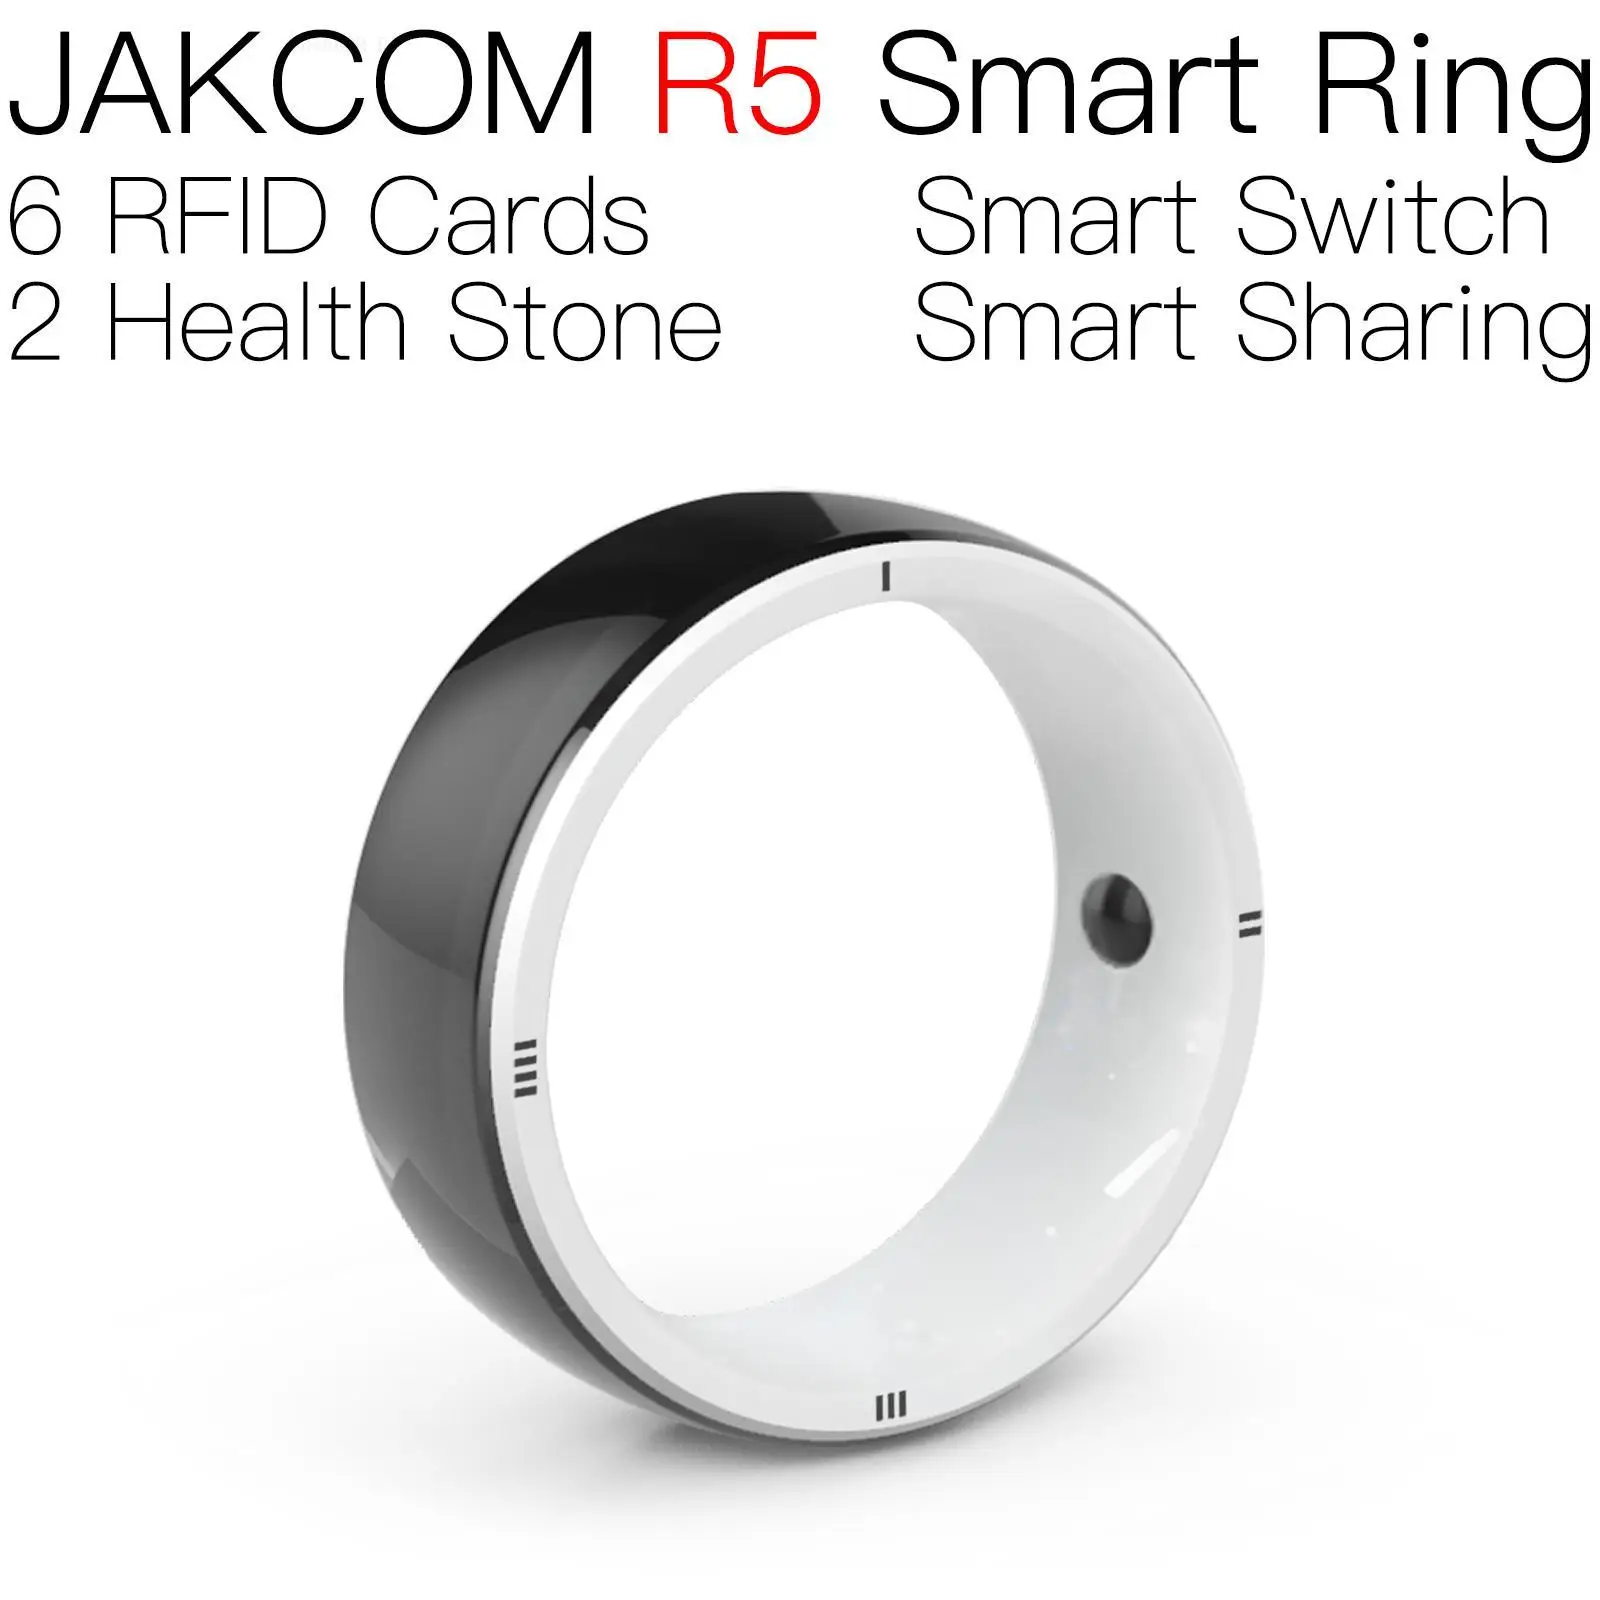 

JAKCOM R5 Smart Ring For men women sound joy ear buds free shipping body composition scale 2 smartch watch smart